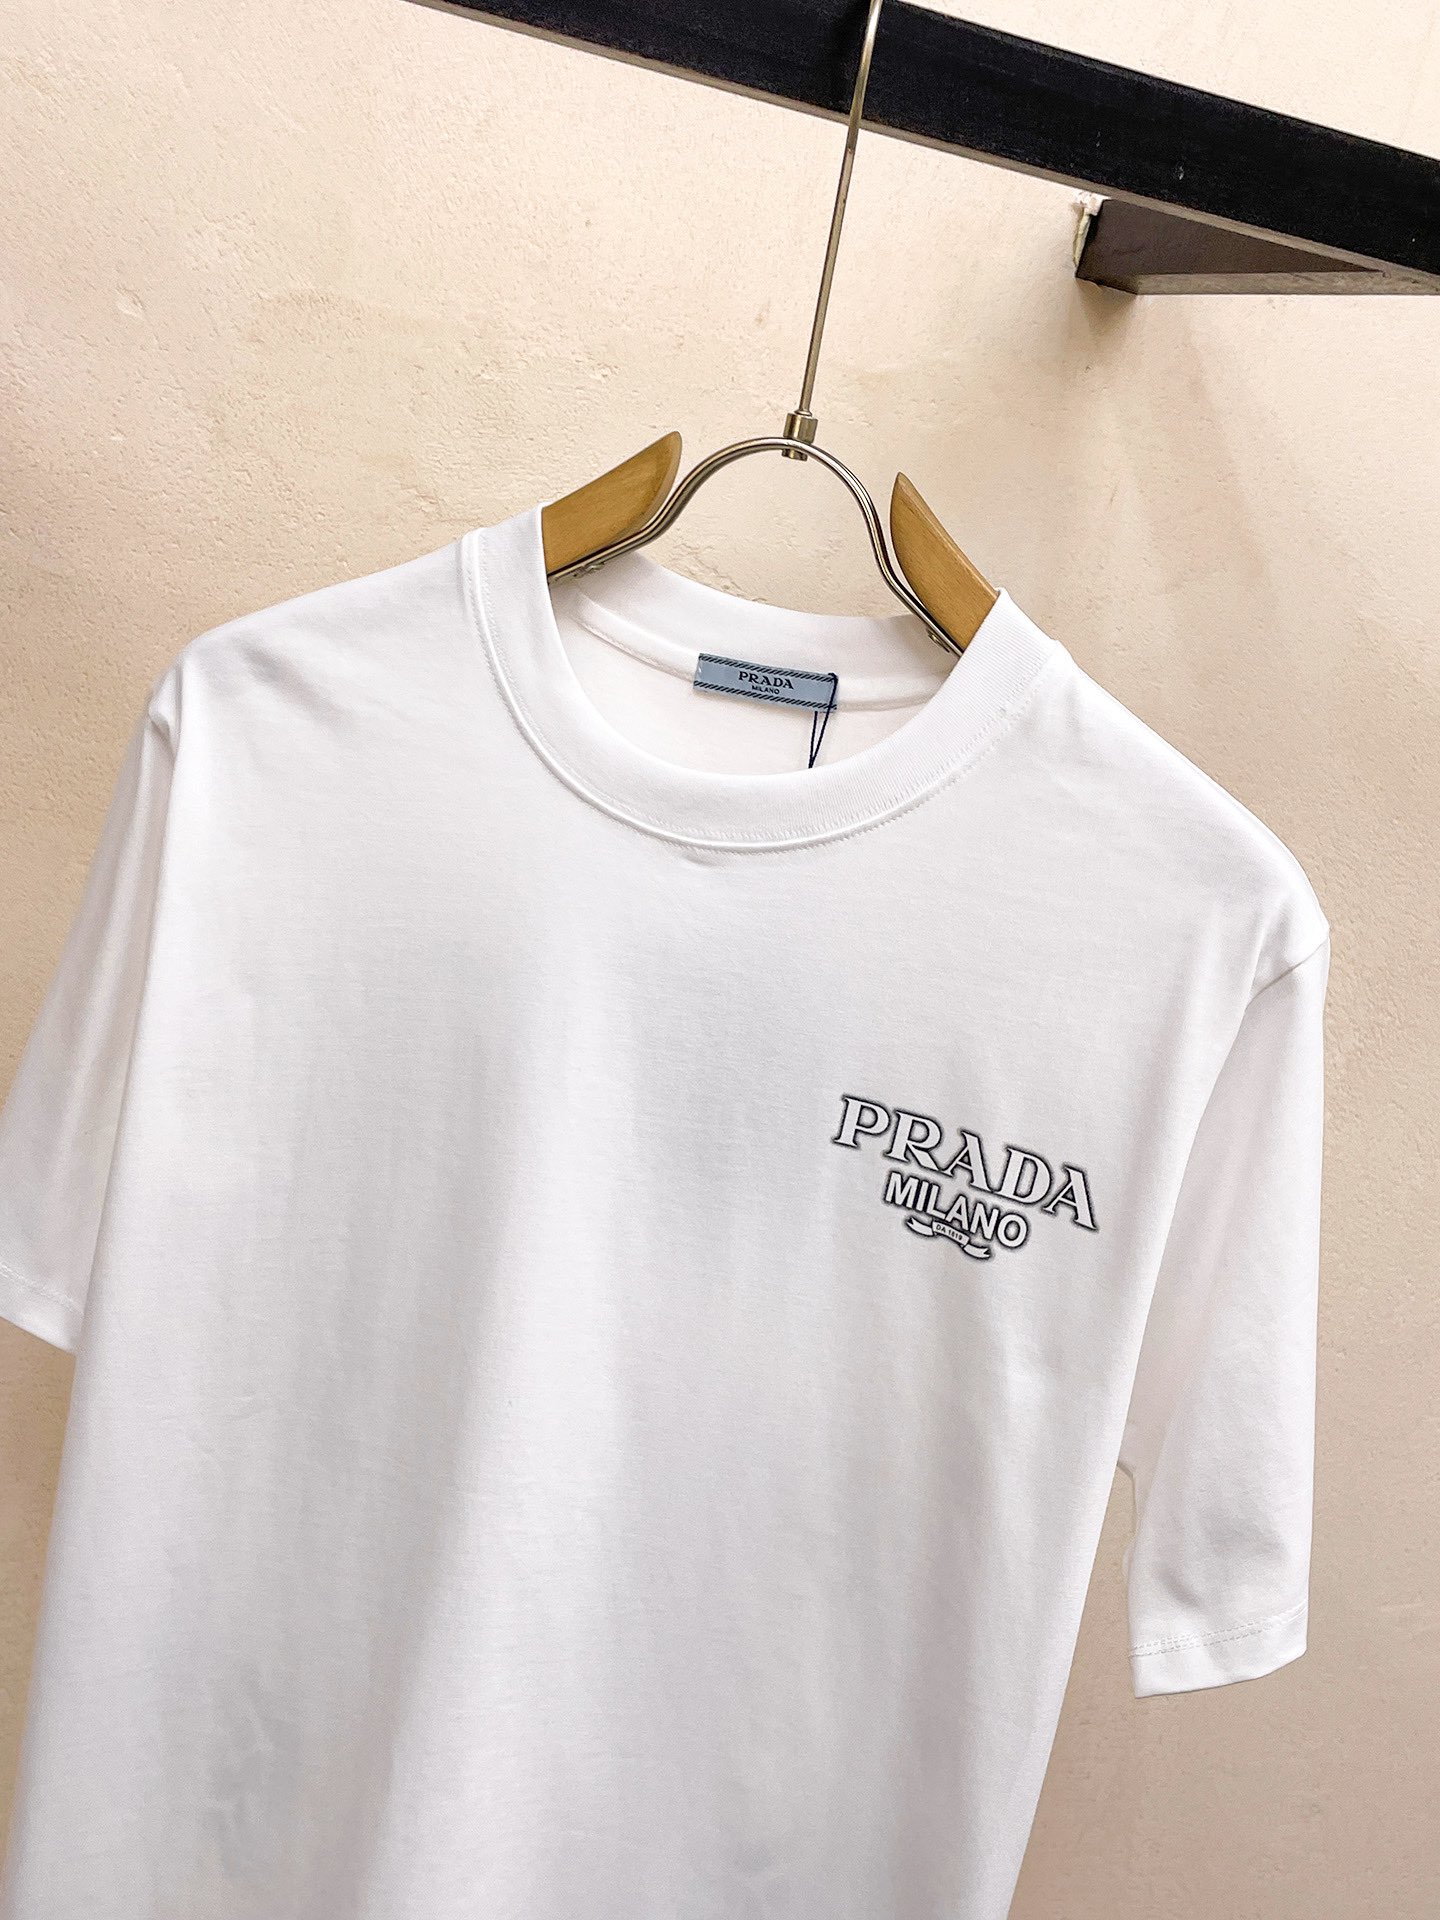 【激安】高級品通販 prada t シャツ メンズ激安通販 短袖 ゆったり 純綿 トップス プリント 夏服 ホワイト_3